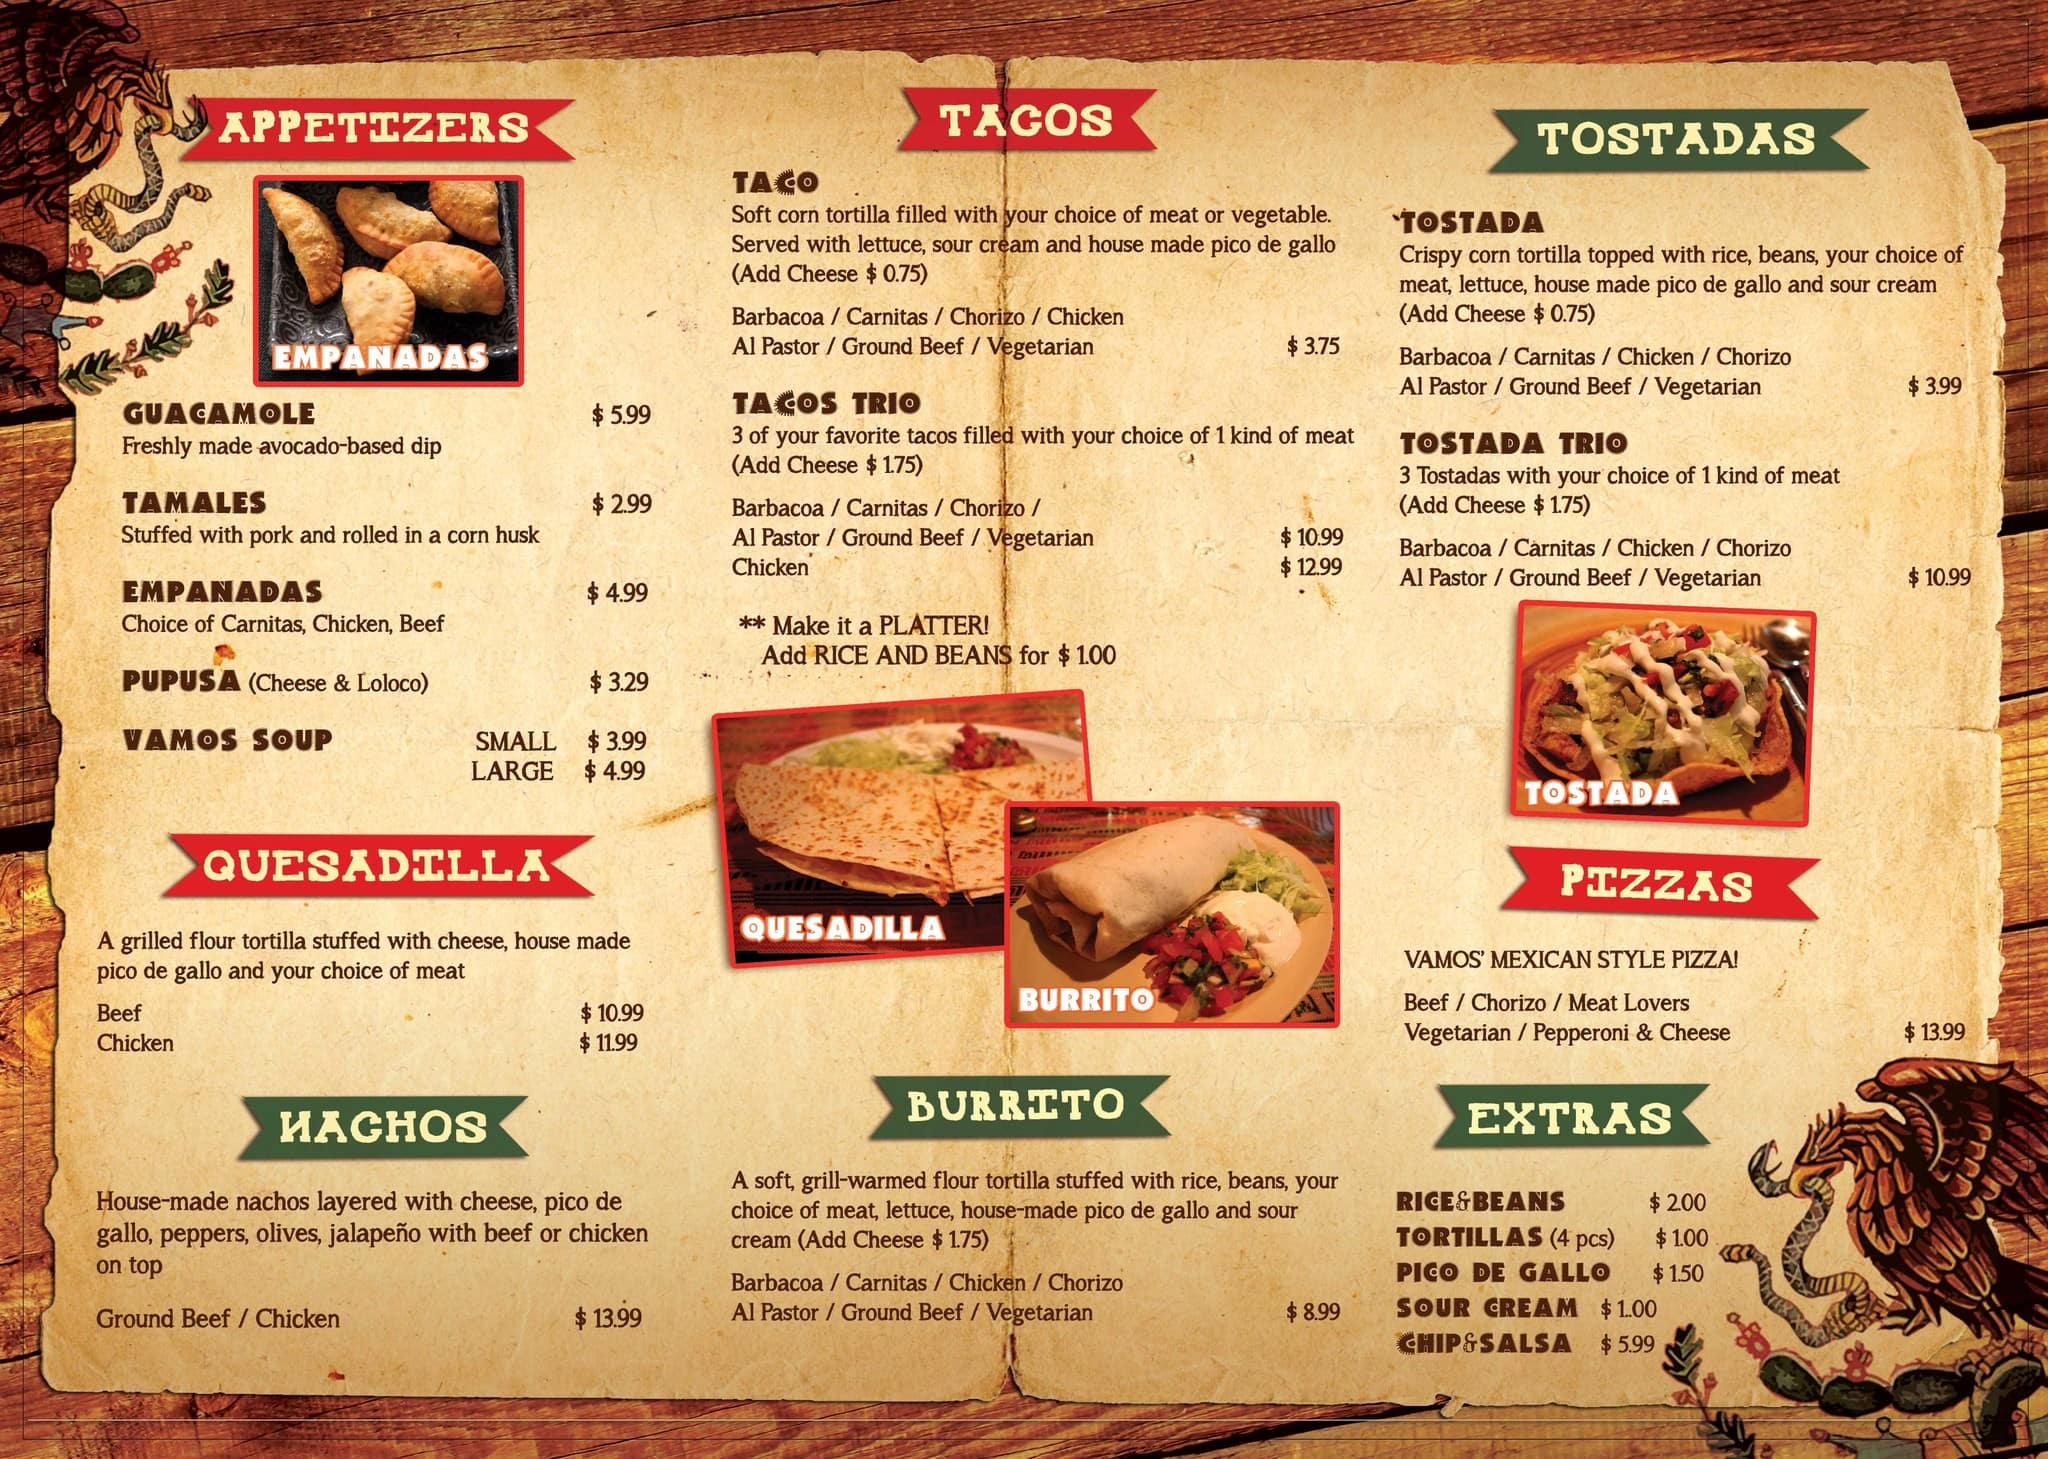 Vamos Tacos menu.